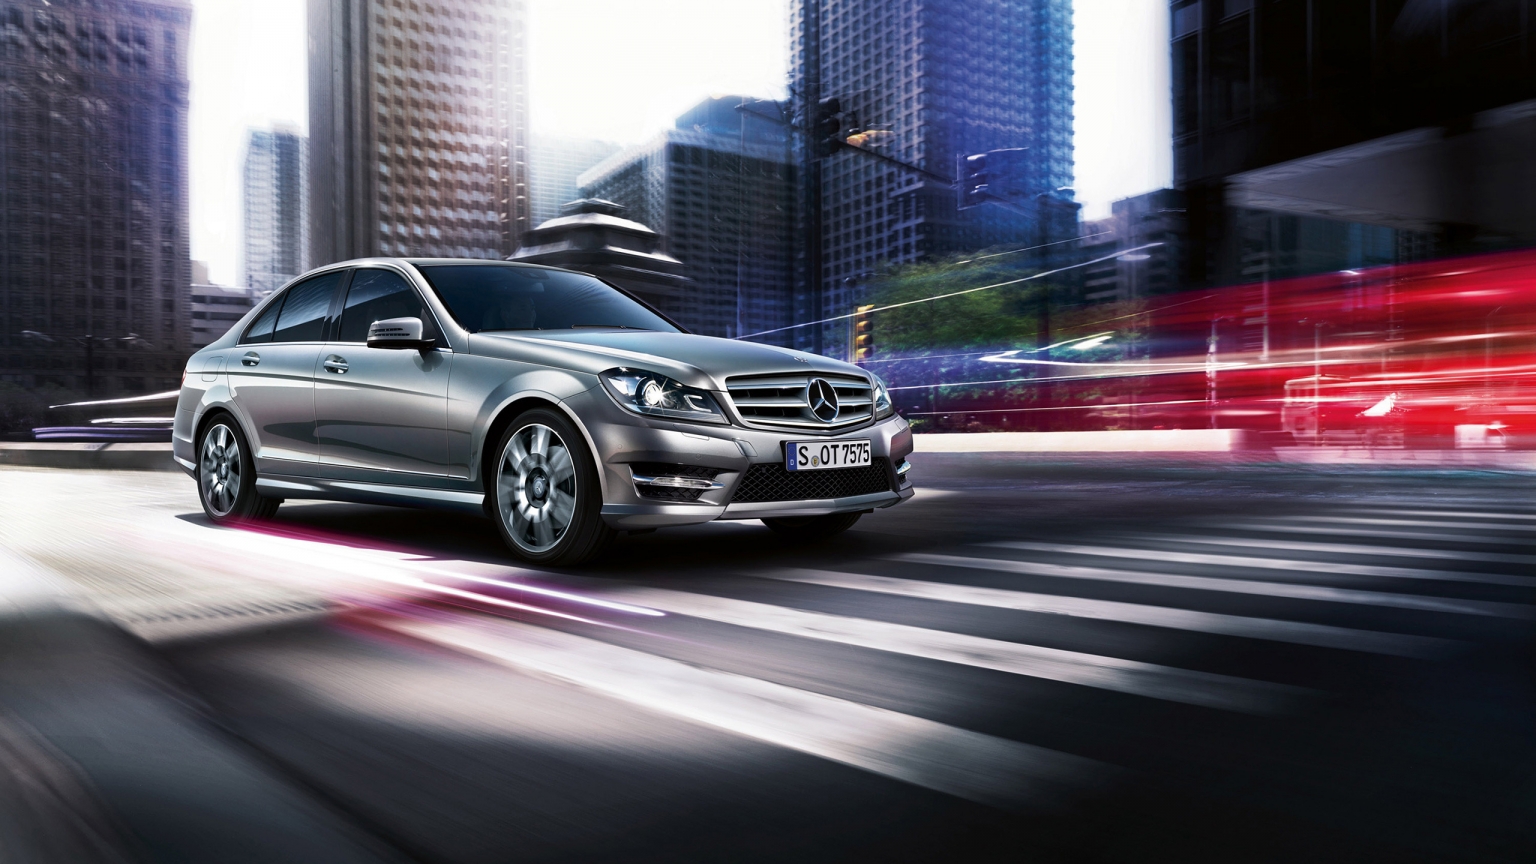 2013 Mercedes-Benz C Class for 1536 x 864 HDTV resolution